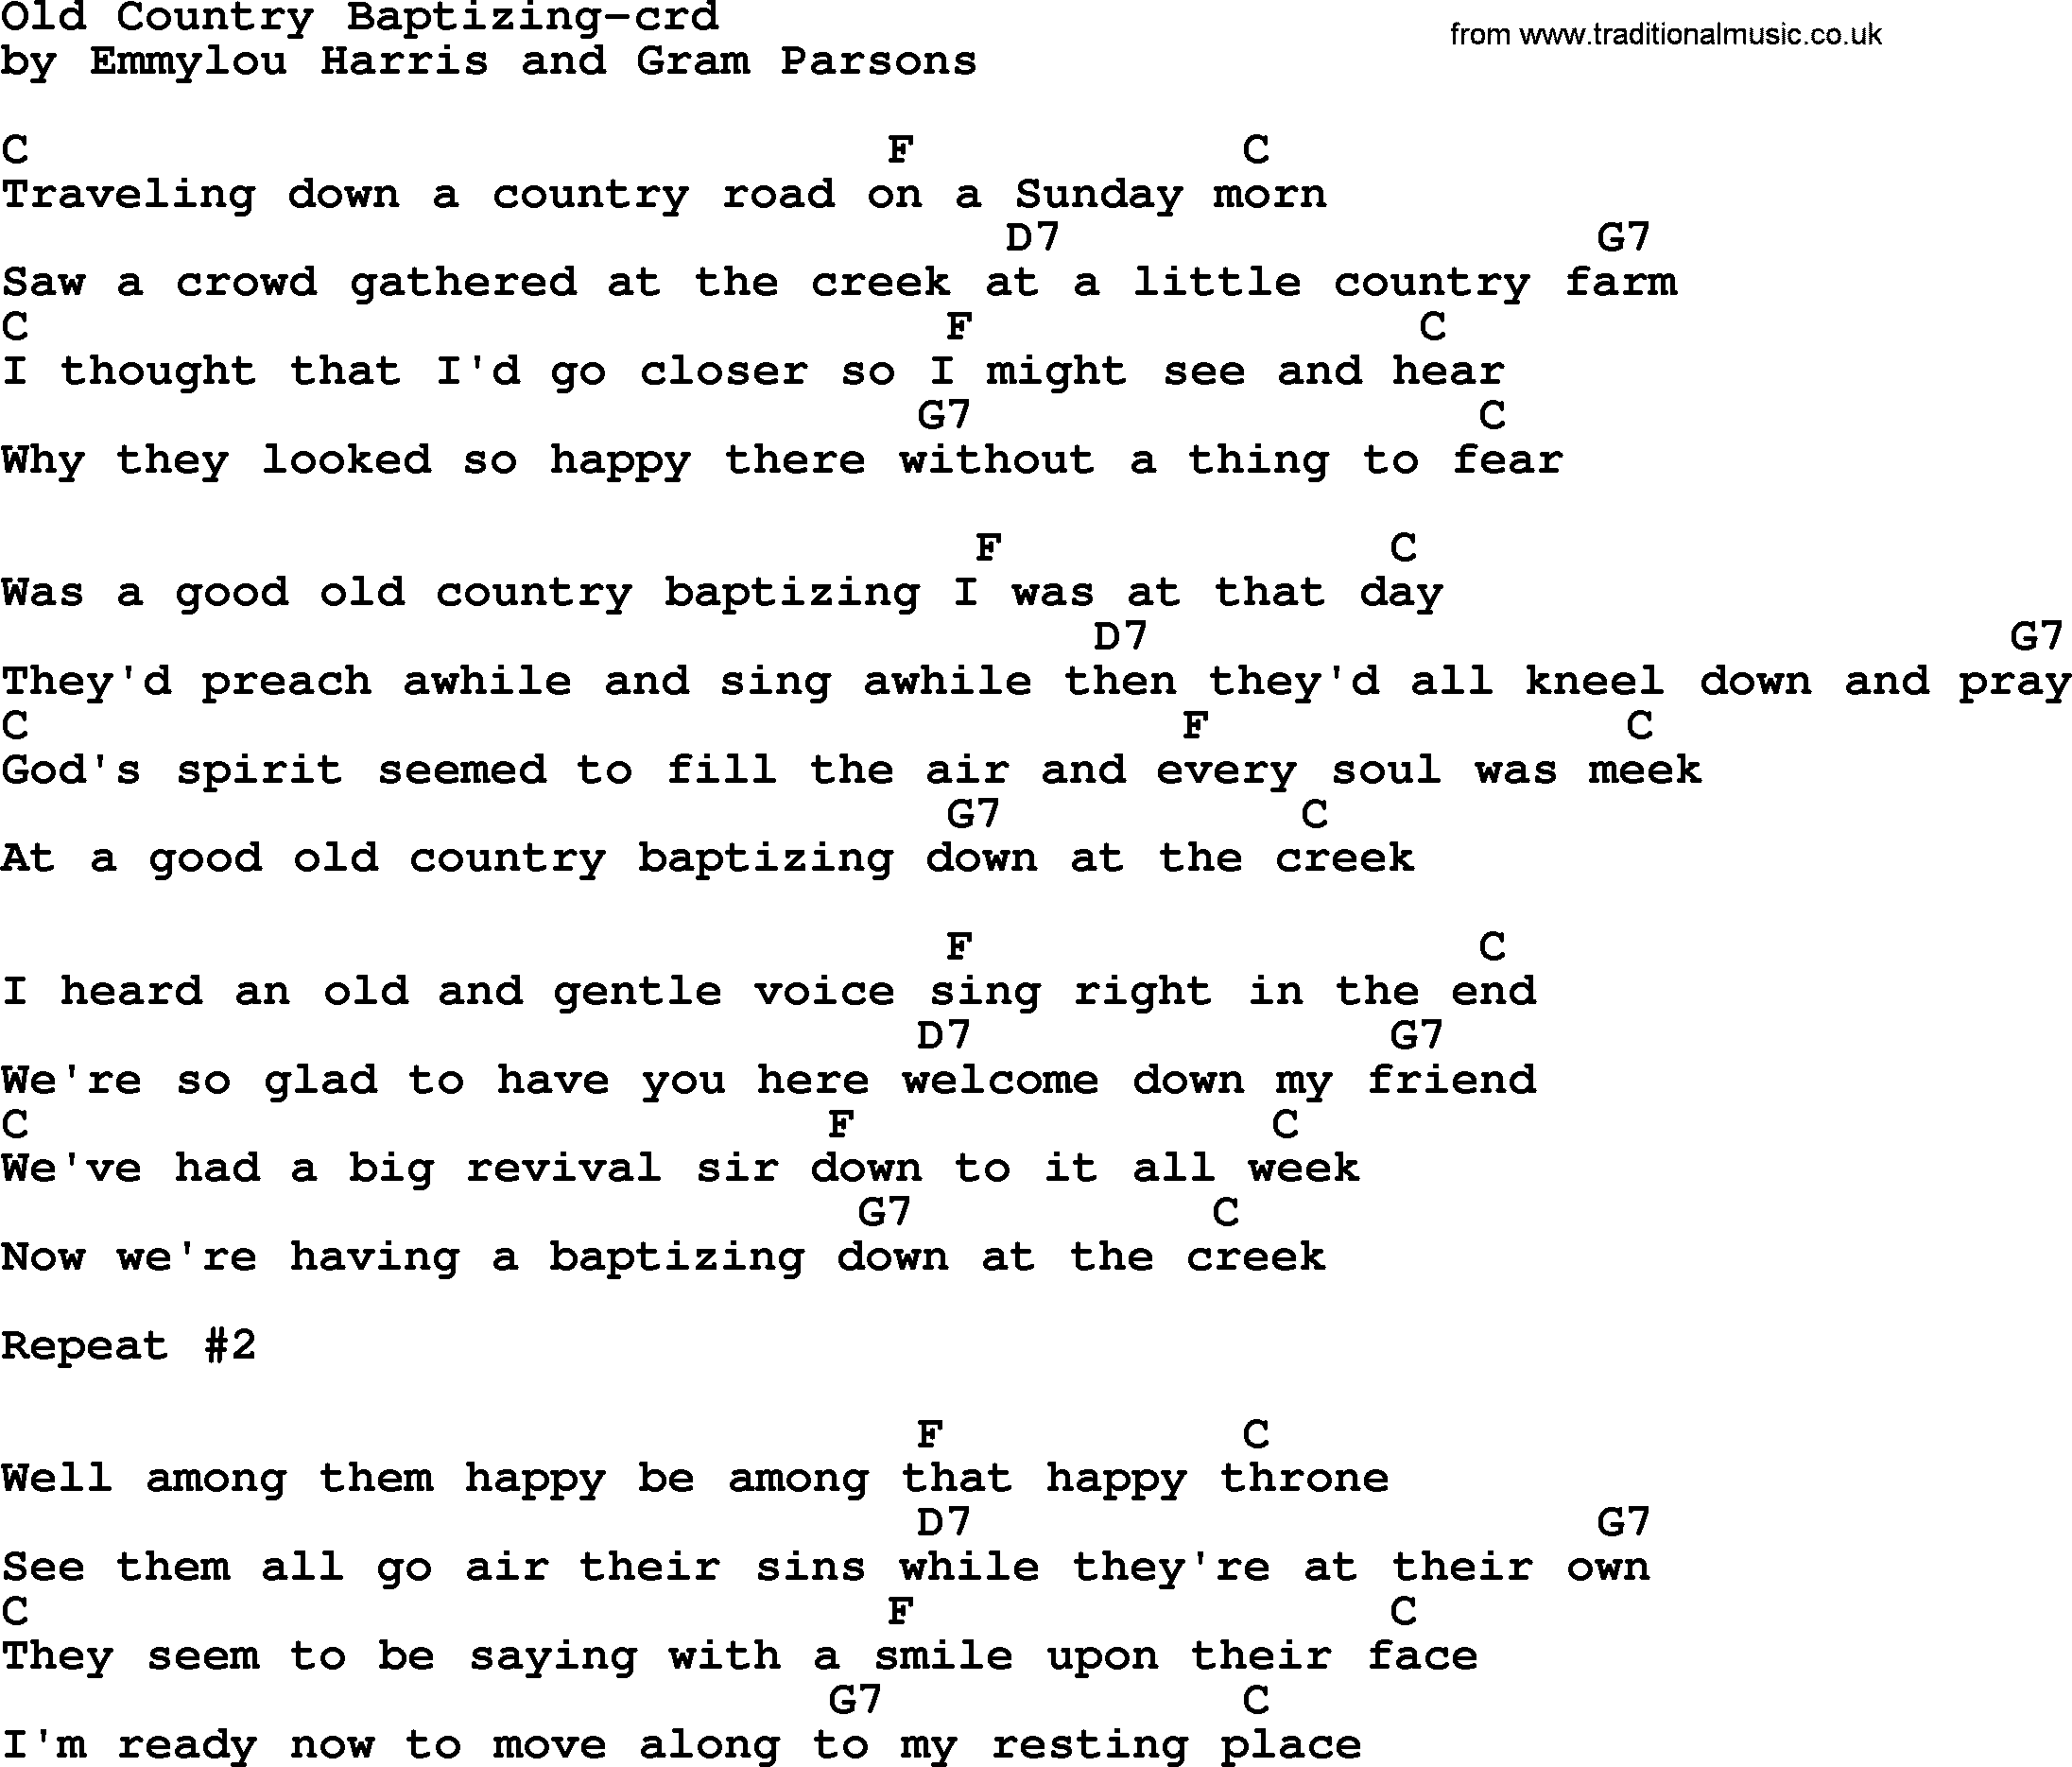 Emmylou Harris song: Old Country Baptizing lyrics and chords